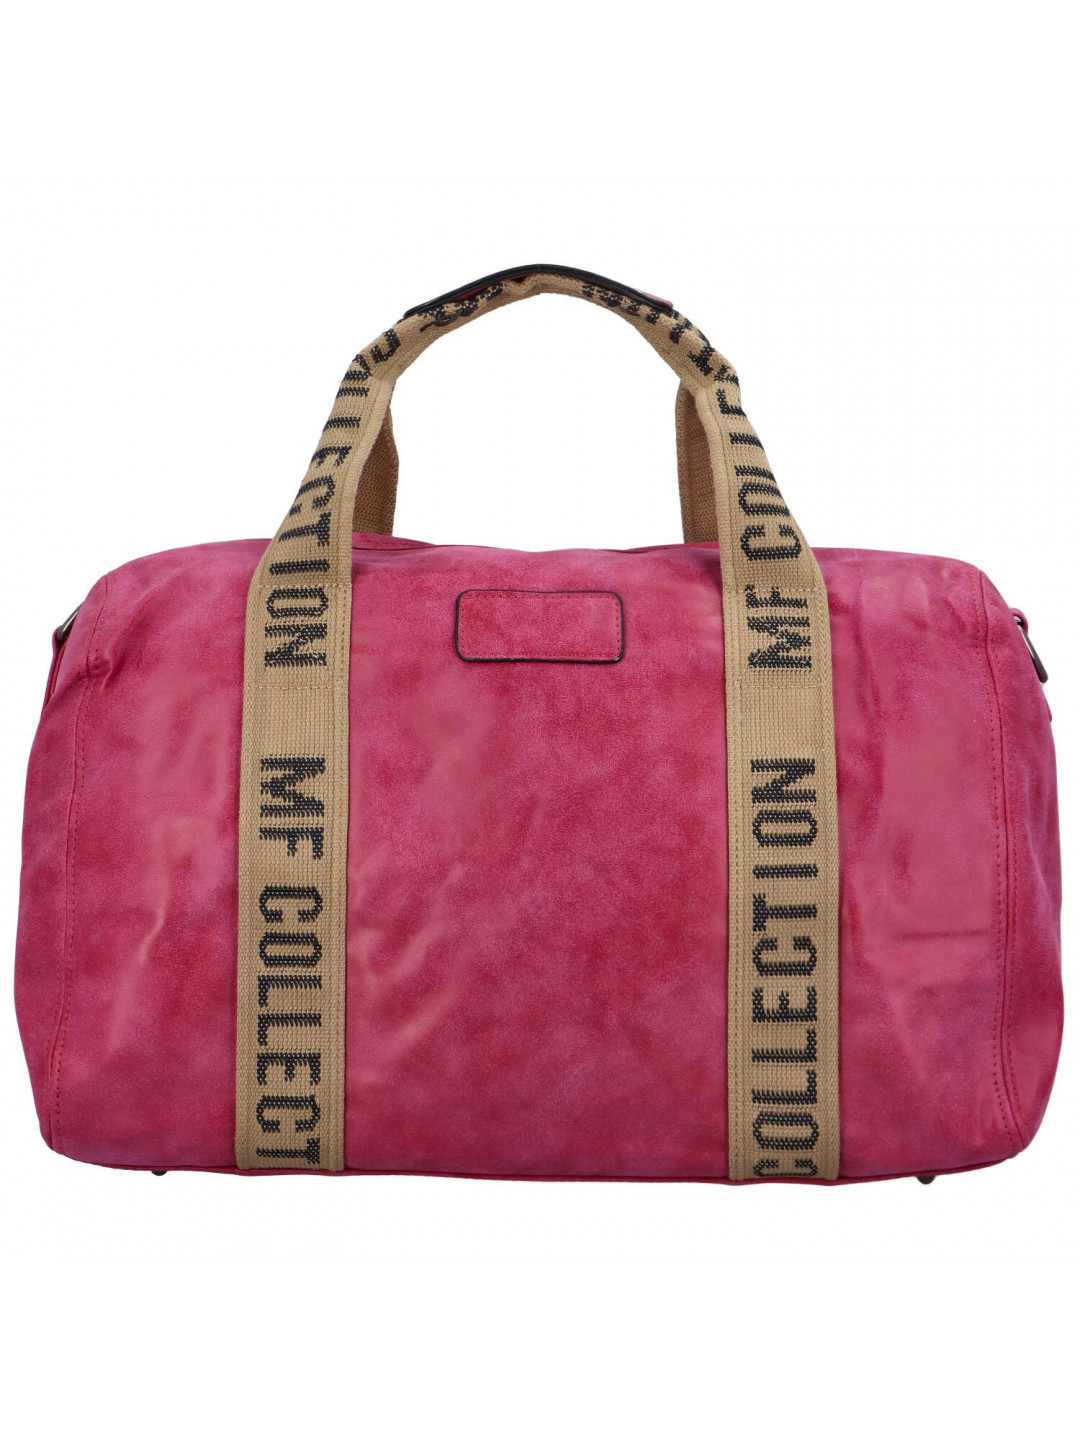 Cestovní dámská koženková kabelka Gita zimní kolekce tmavě růžová